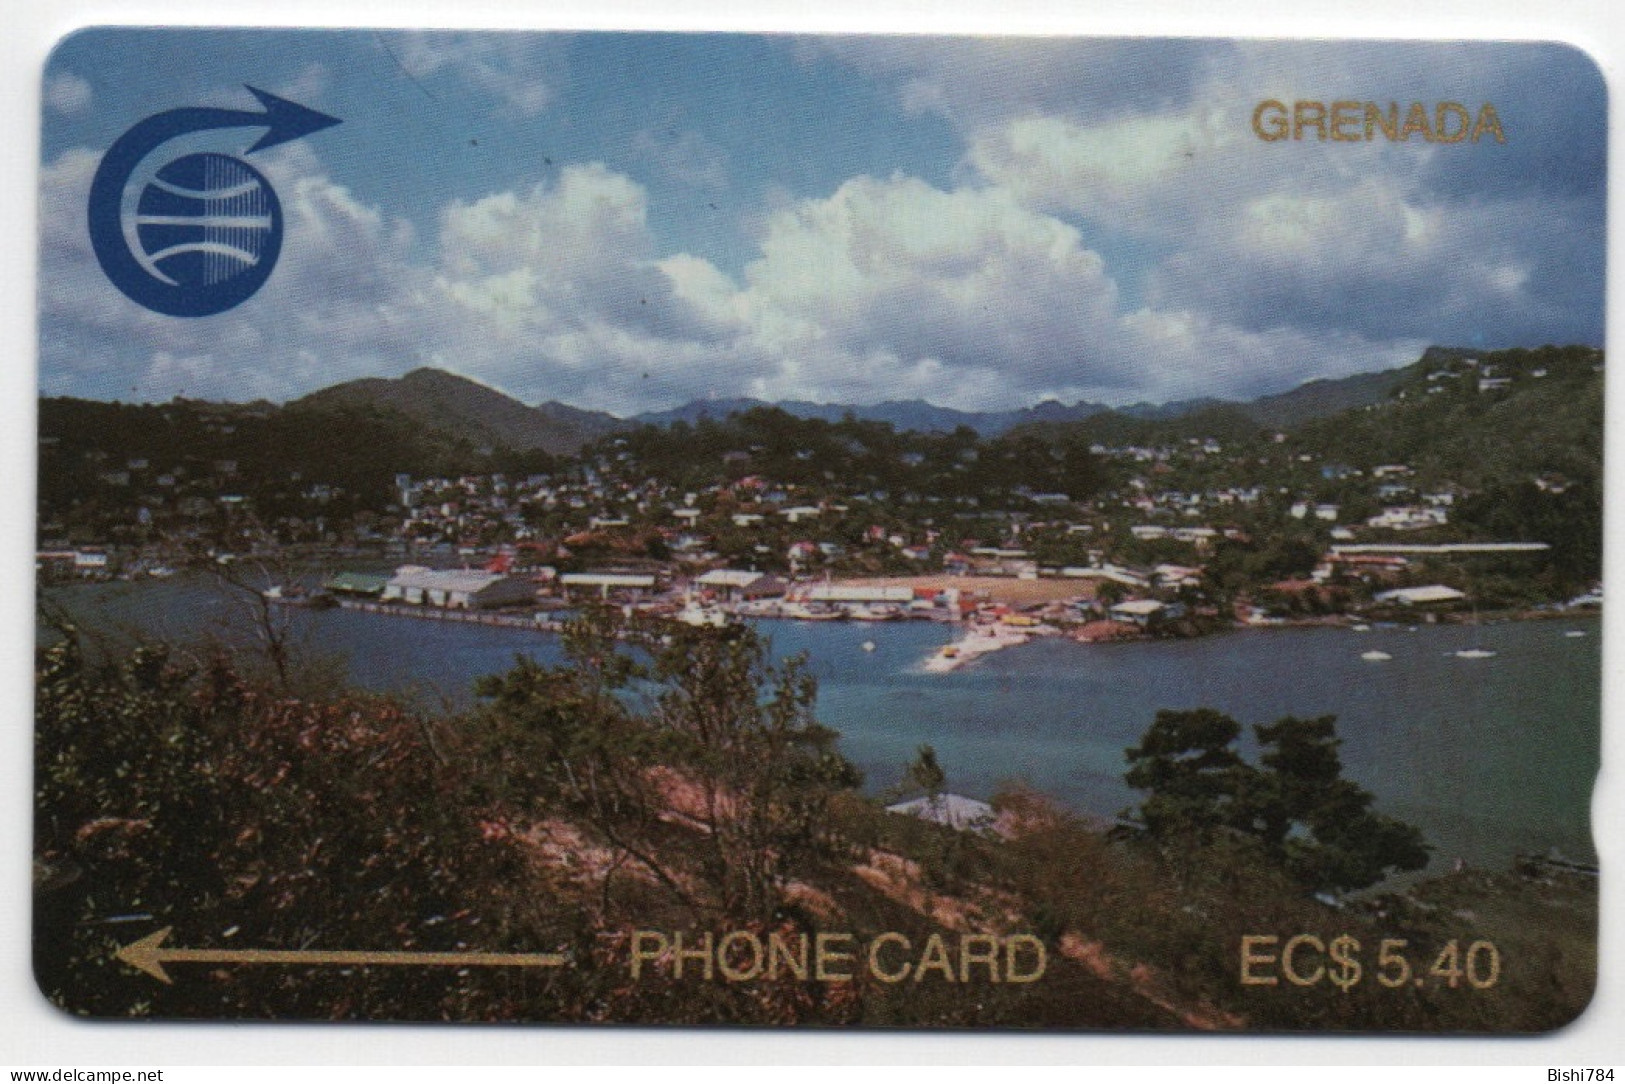 Grenada - View Of St. George’s $5.40 (Windward Island Pack) - 2CGRA - Grenada